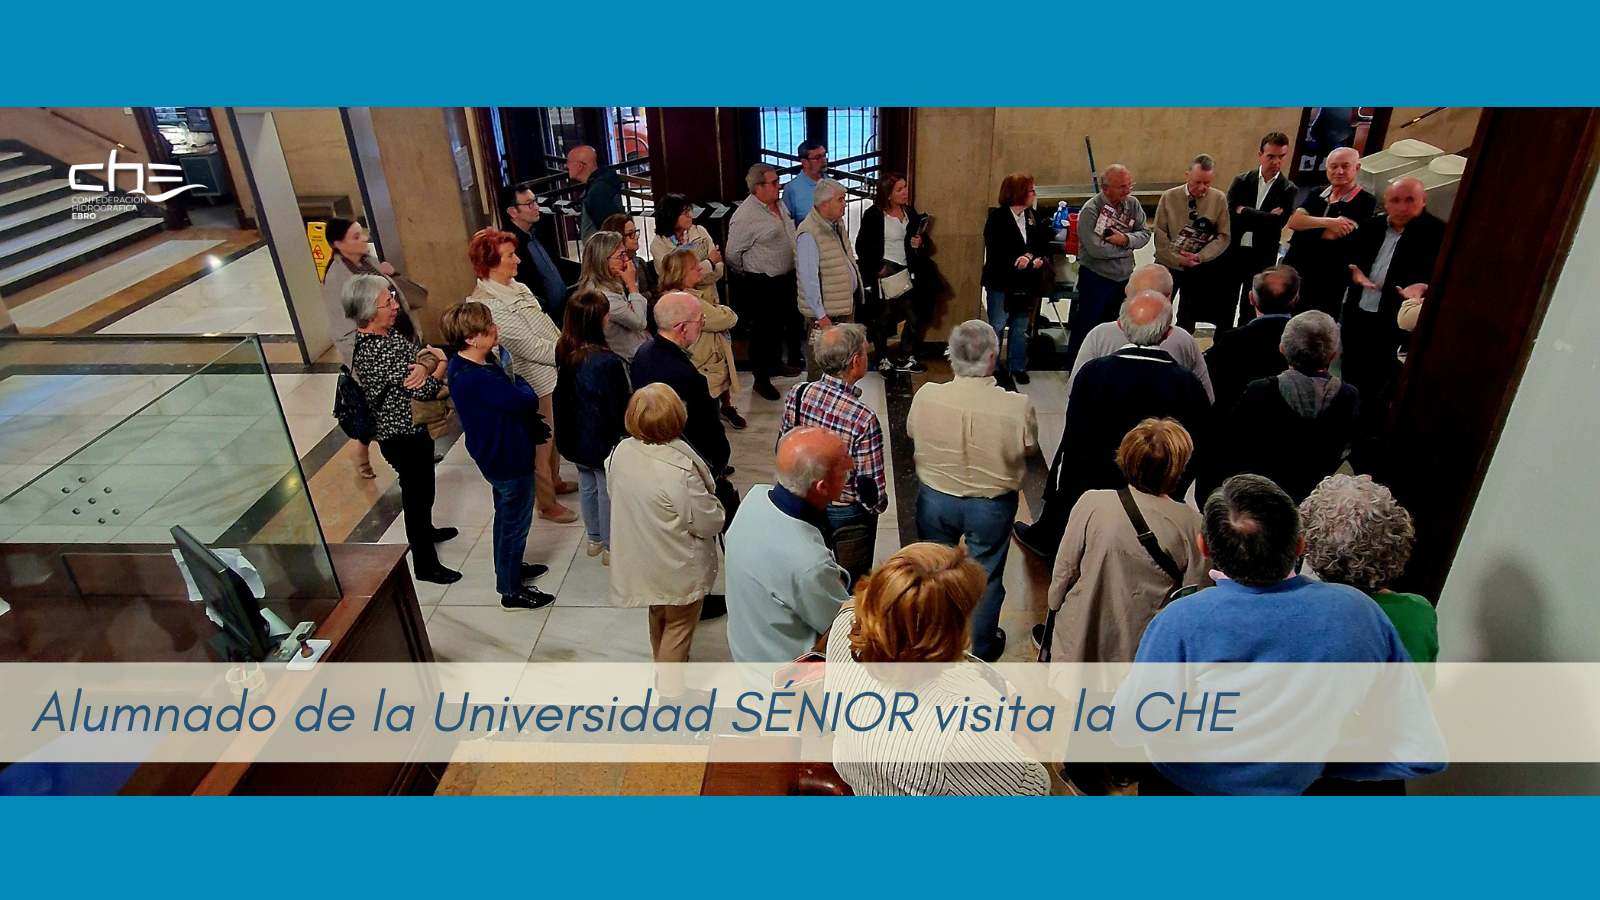 Imagen noticia - La Universidad San Jorge - SÉNIOR analiza en la sede de la CHE el urbanismo de Zaragoza